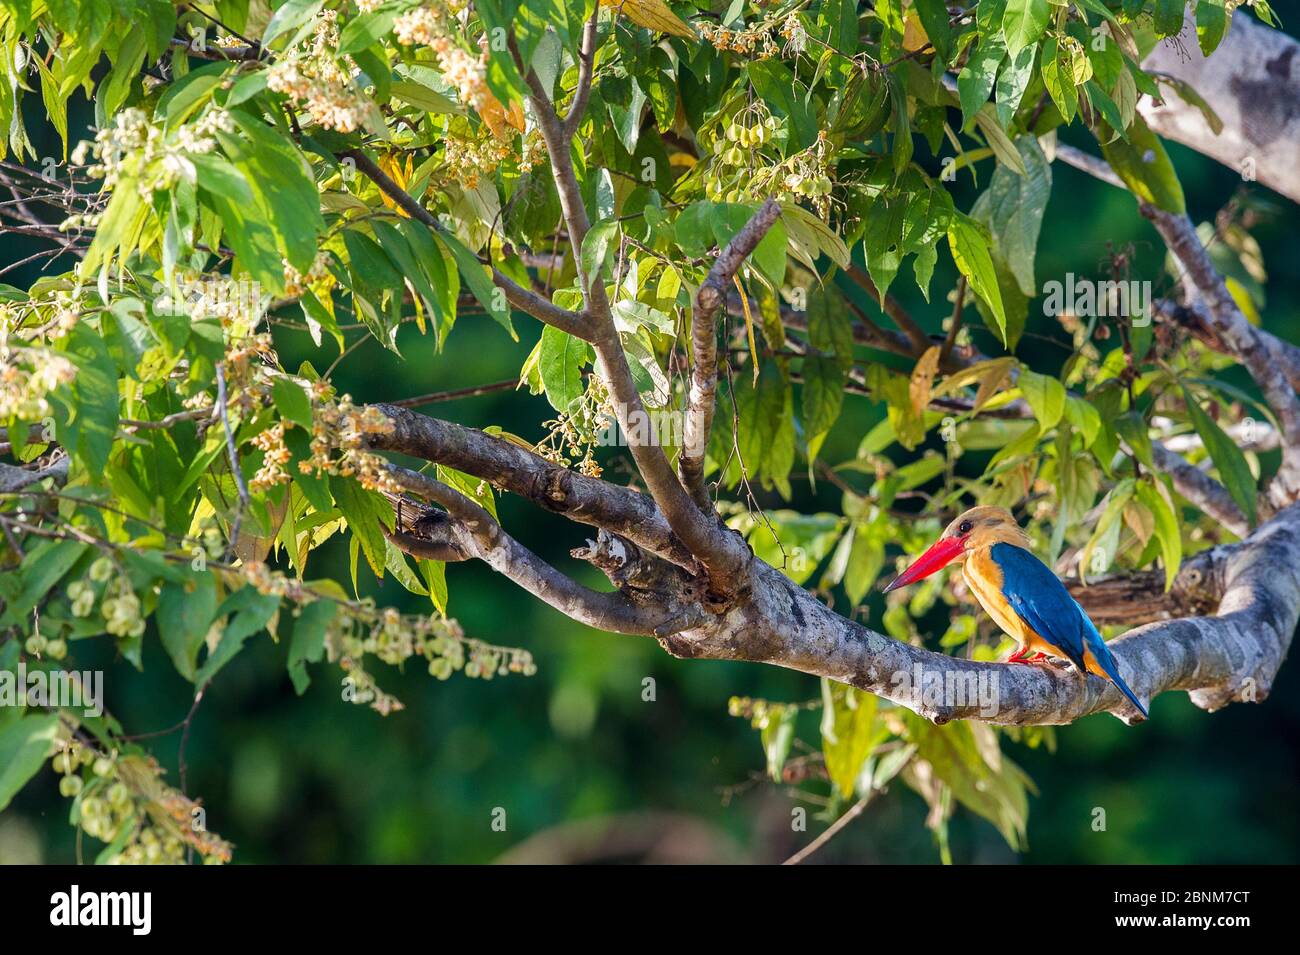 Storchschnabelkönigsvogel (Pelargopsis oder Halcyon capensis), der von einem Zweig jagt, der den Fluss überhängt. Kinabatangan River, Sabah, Borneo. September. Stockfoto